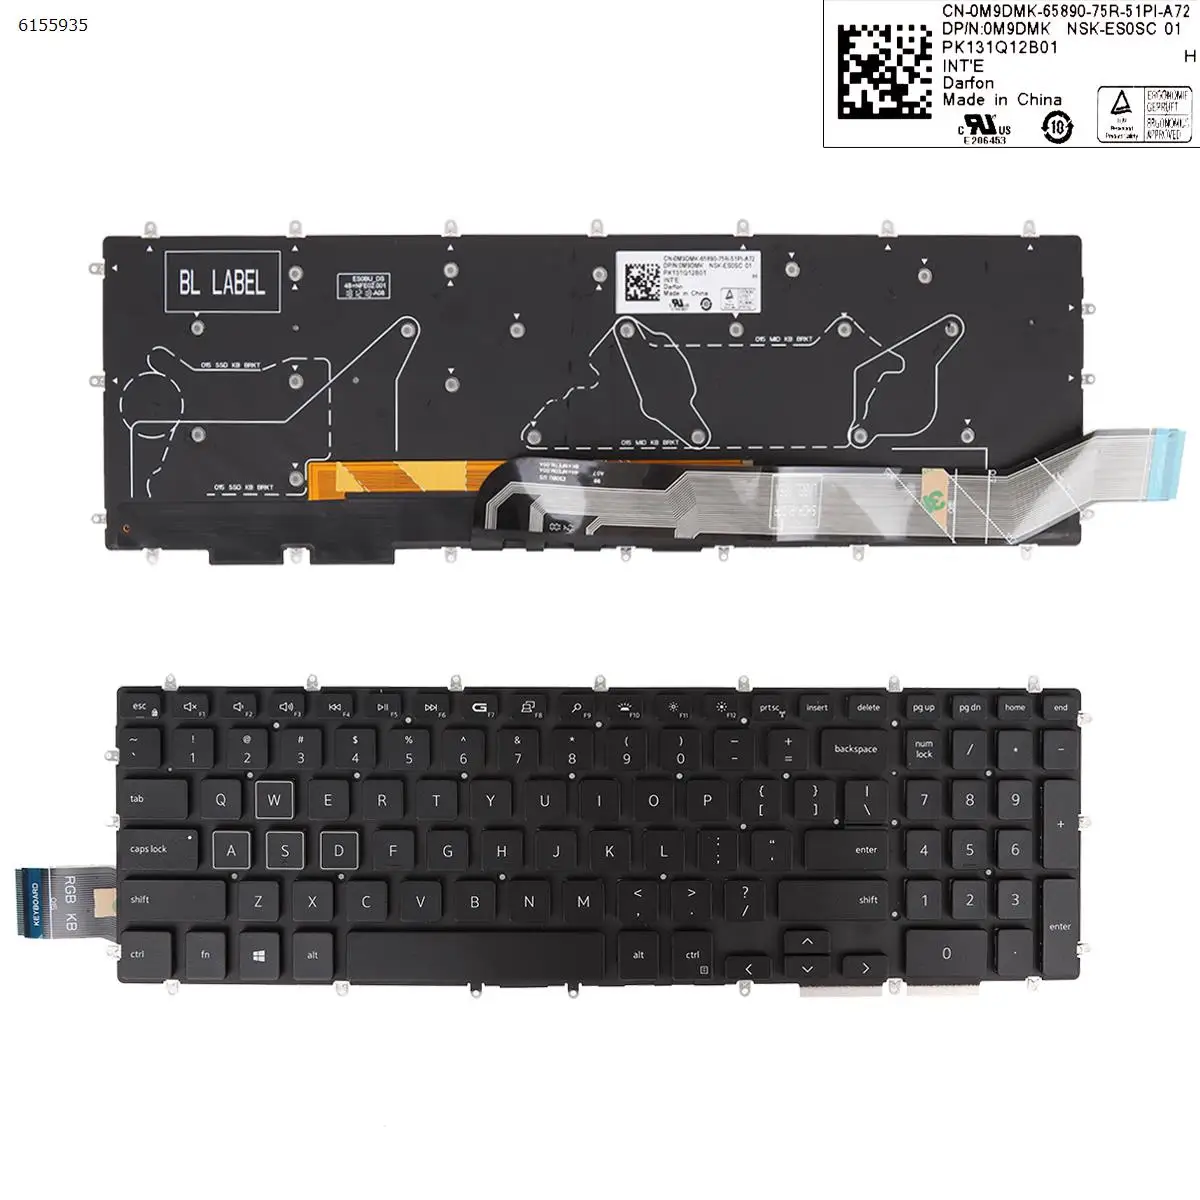 

US Laptop Keyboard for DELL 3595 17 3790 3793 17 3780 3781 3782 3785 5565 5567 3580 3581 3582 BLACK Full Colorful Backlit